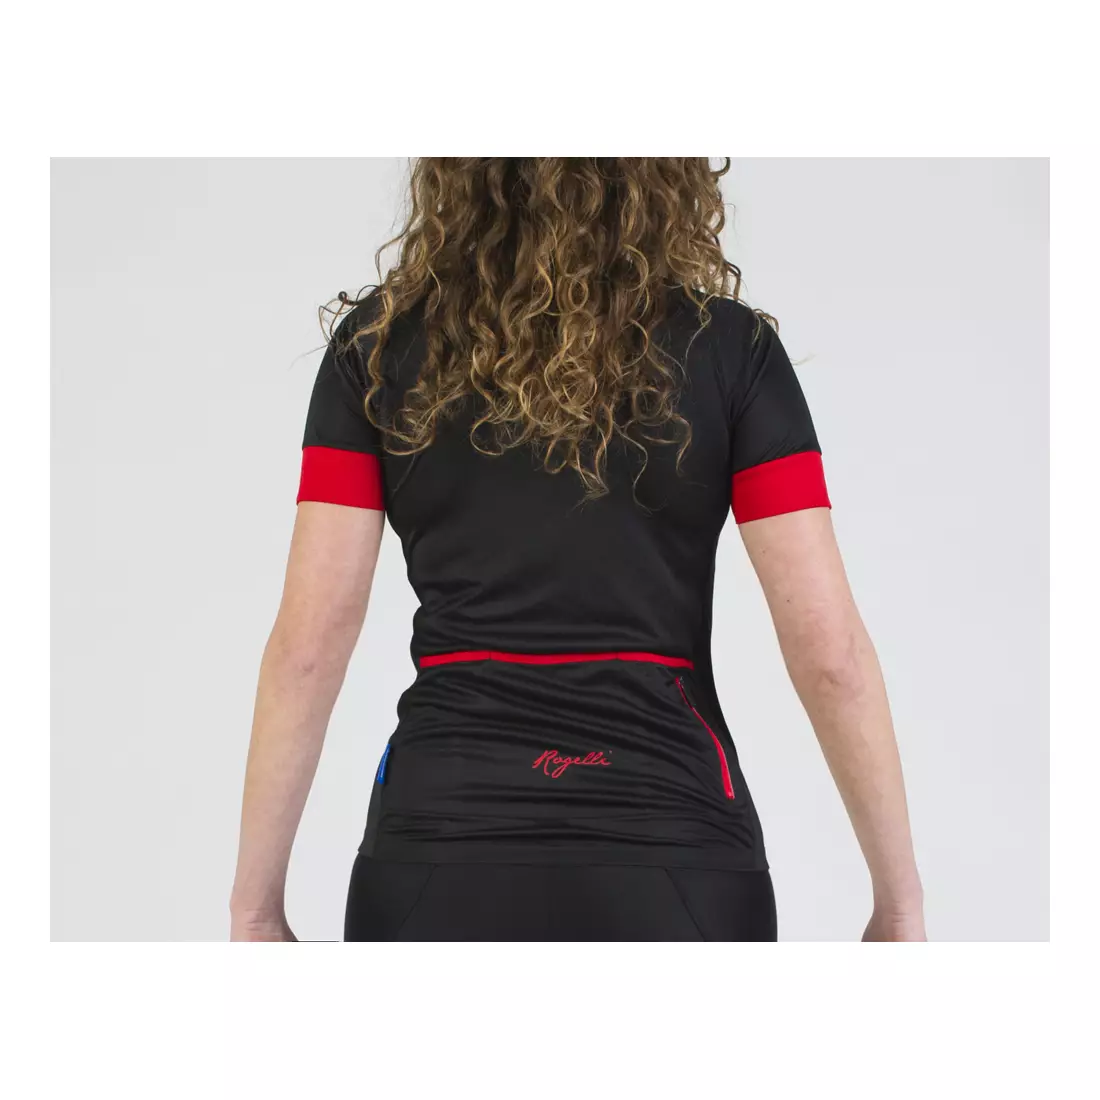 Dámský cyklistický dres ROGELLI MODESTA, černo-červený